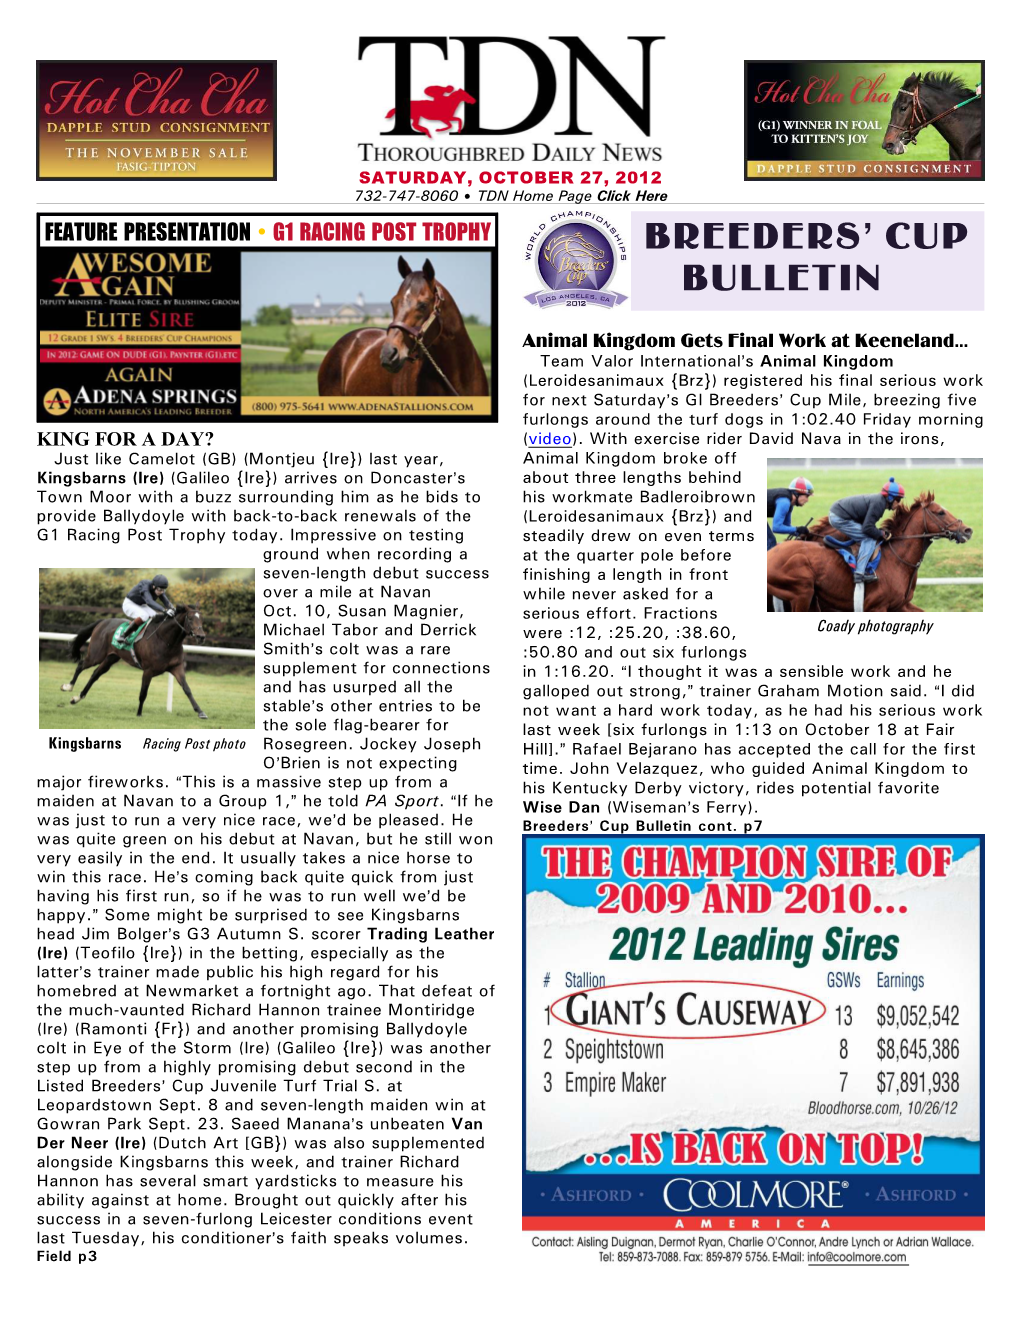 Breeders' Cup Bulletin